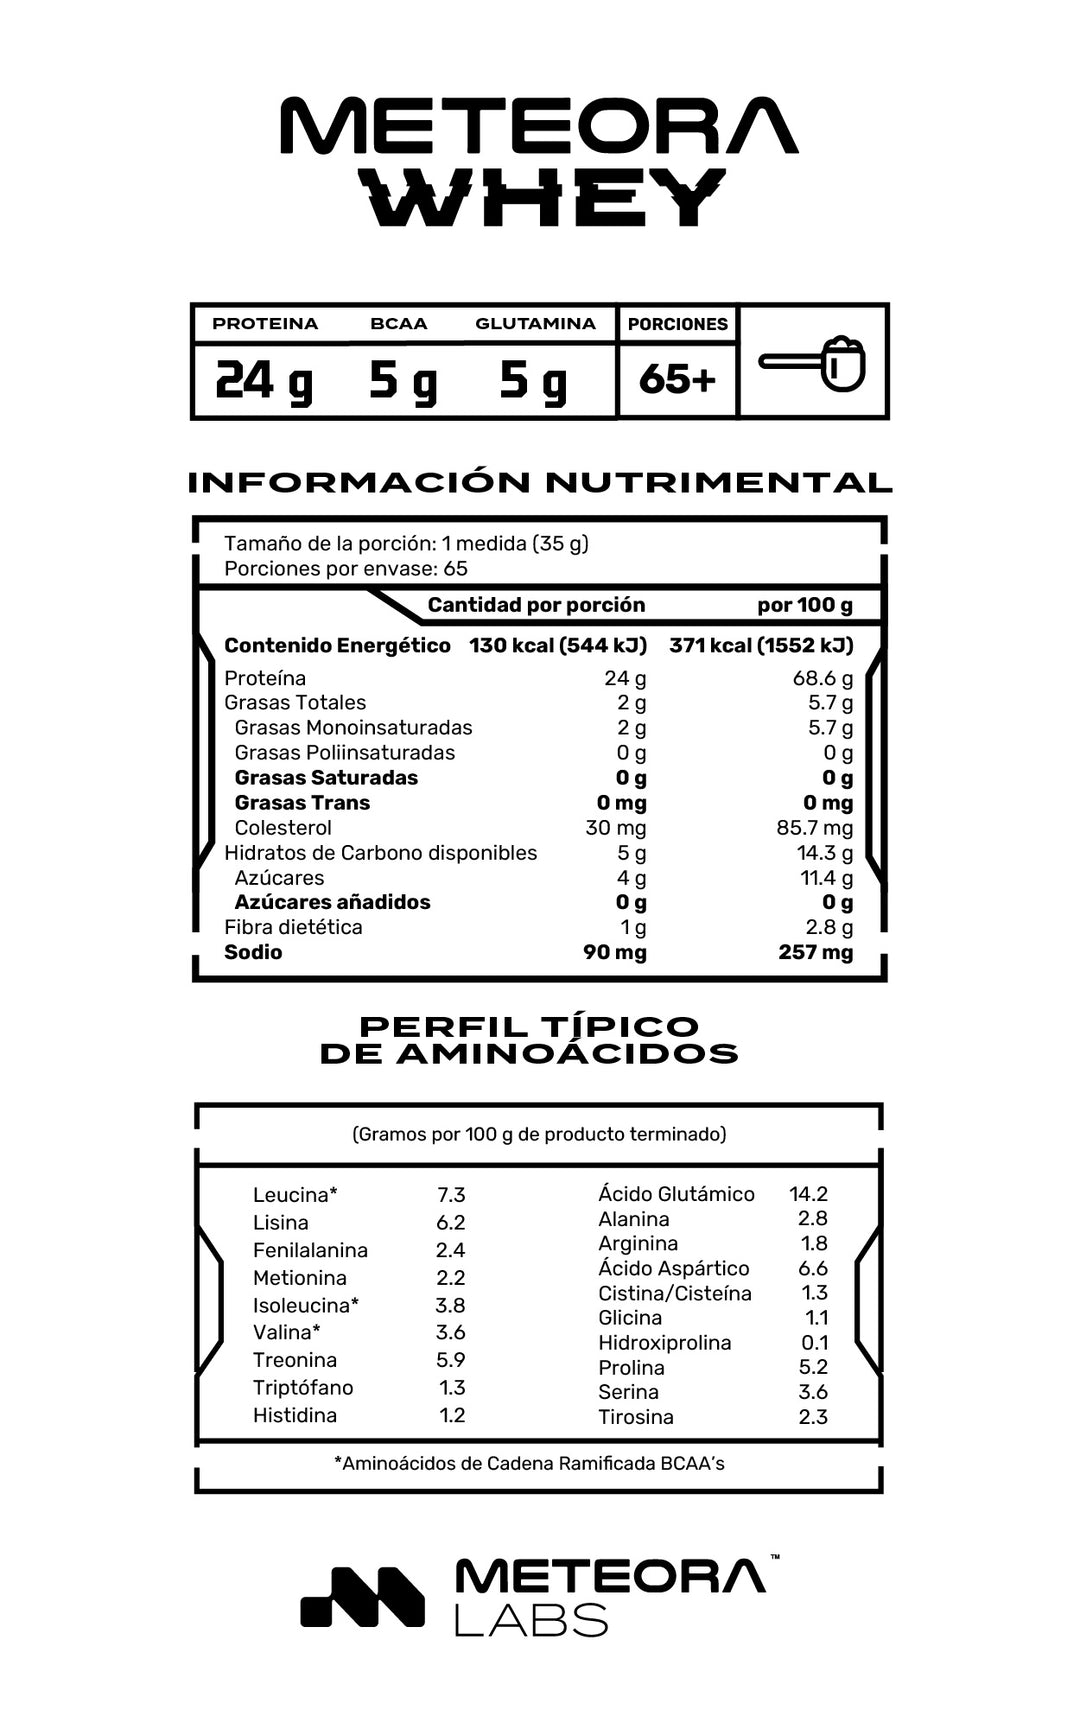 Meteora Whey | 100% Proteína de suero de leche hidrolizada | Astral Berry | 5 Lbs